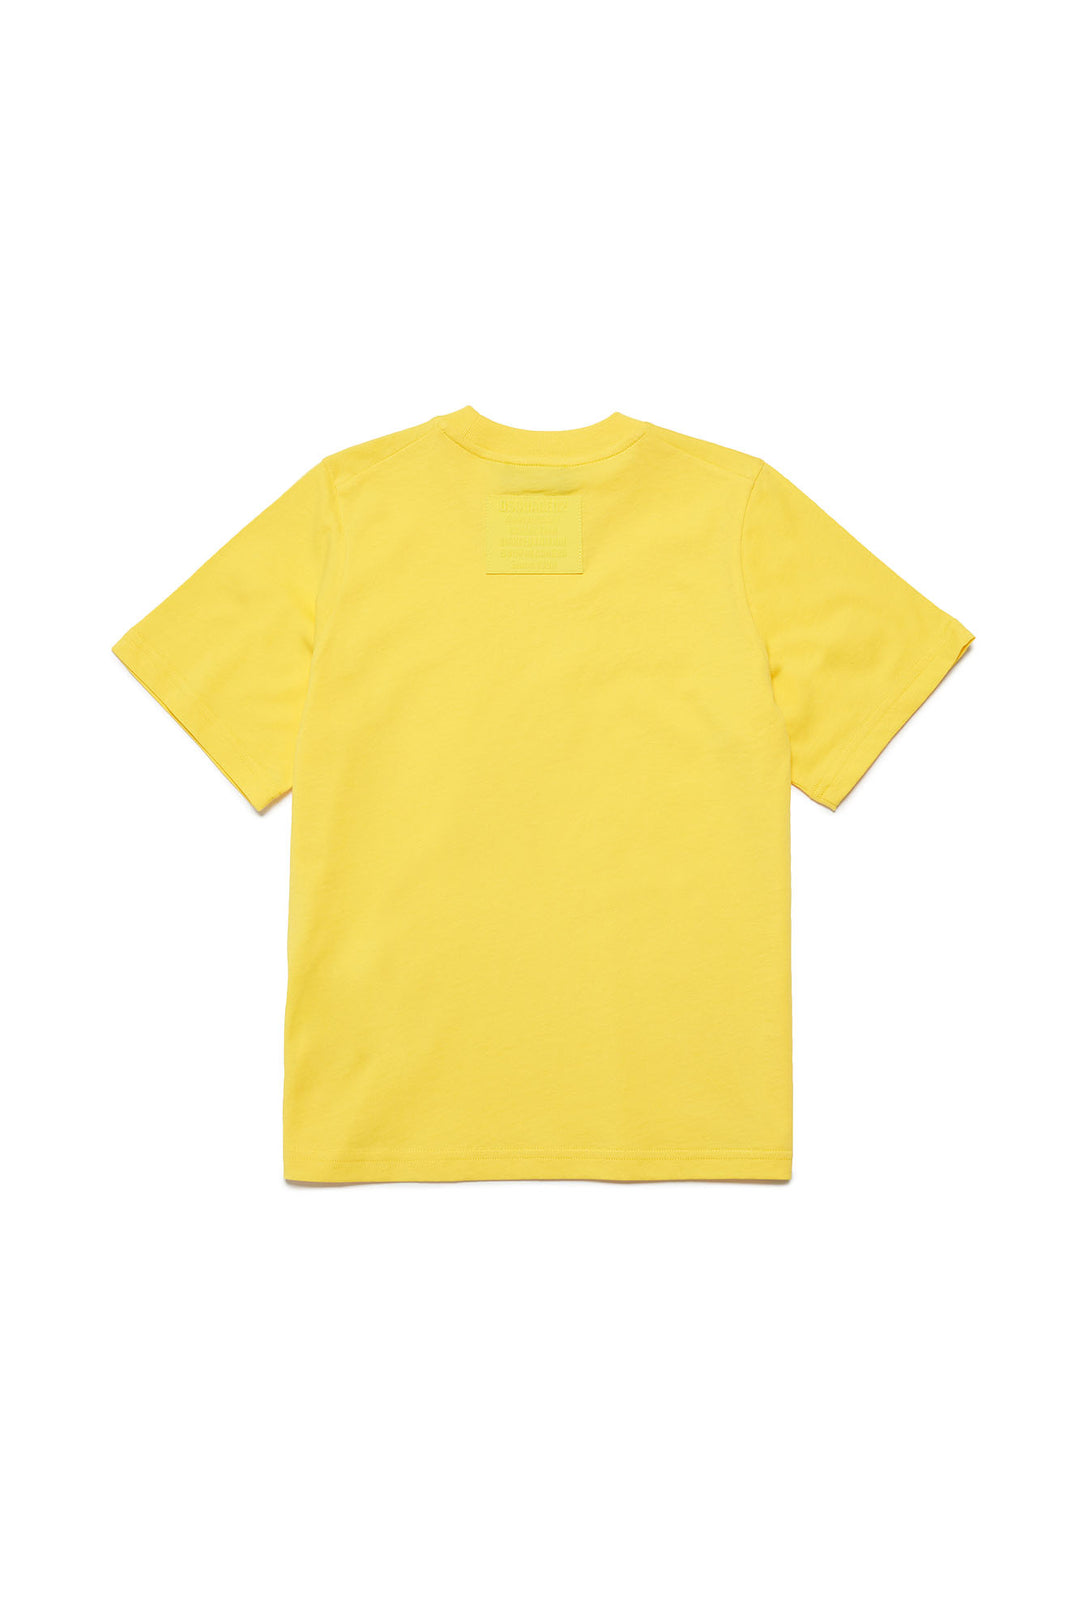 T-shirt bambino giallo chiaro